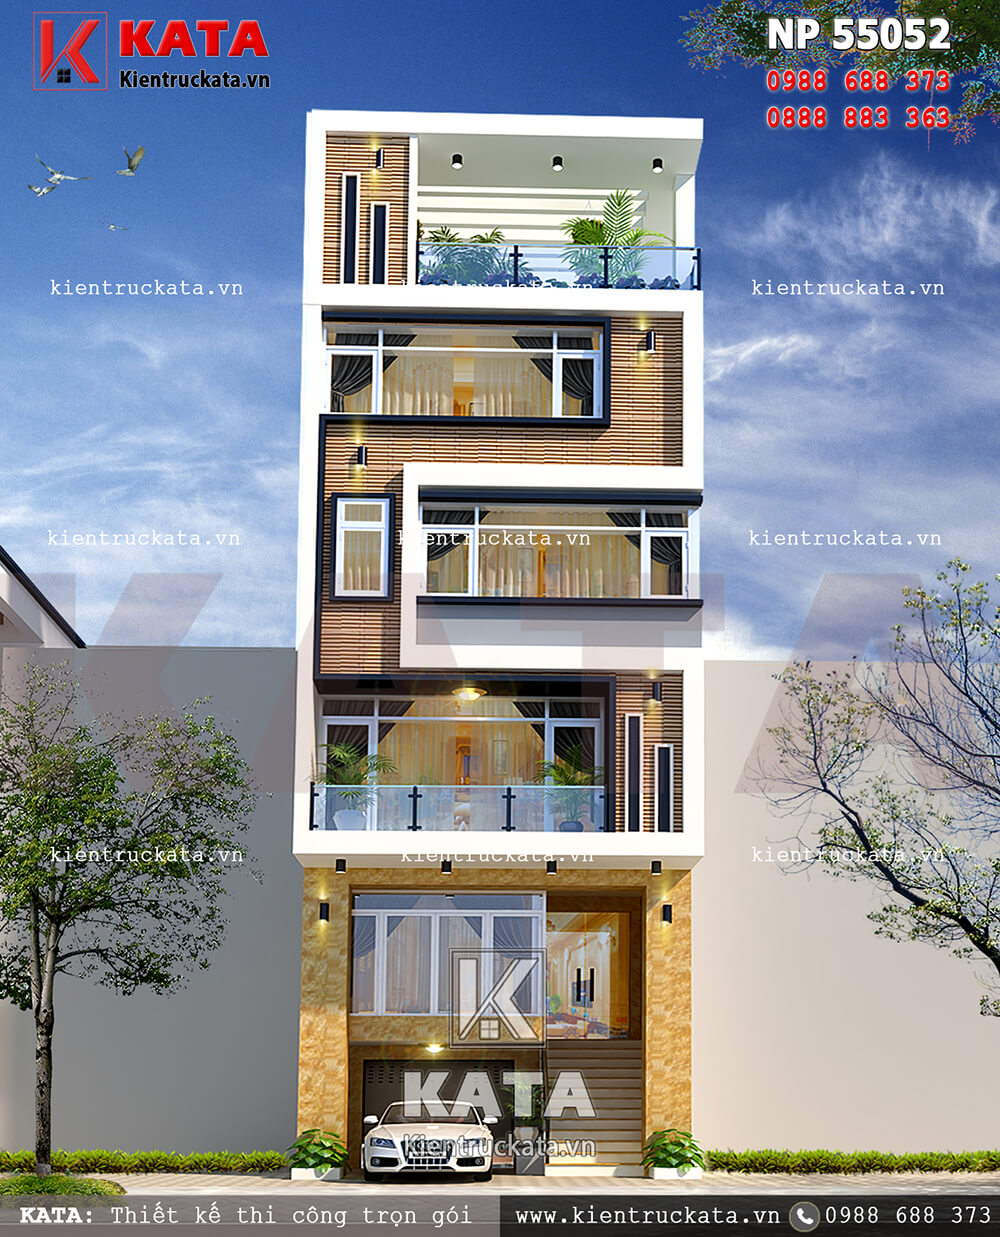 Thiết kế nhà phố 5 tầng kết hợp kinh doanh – Mã số: NP 55052